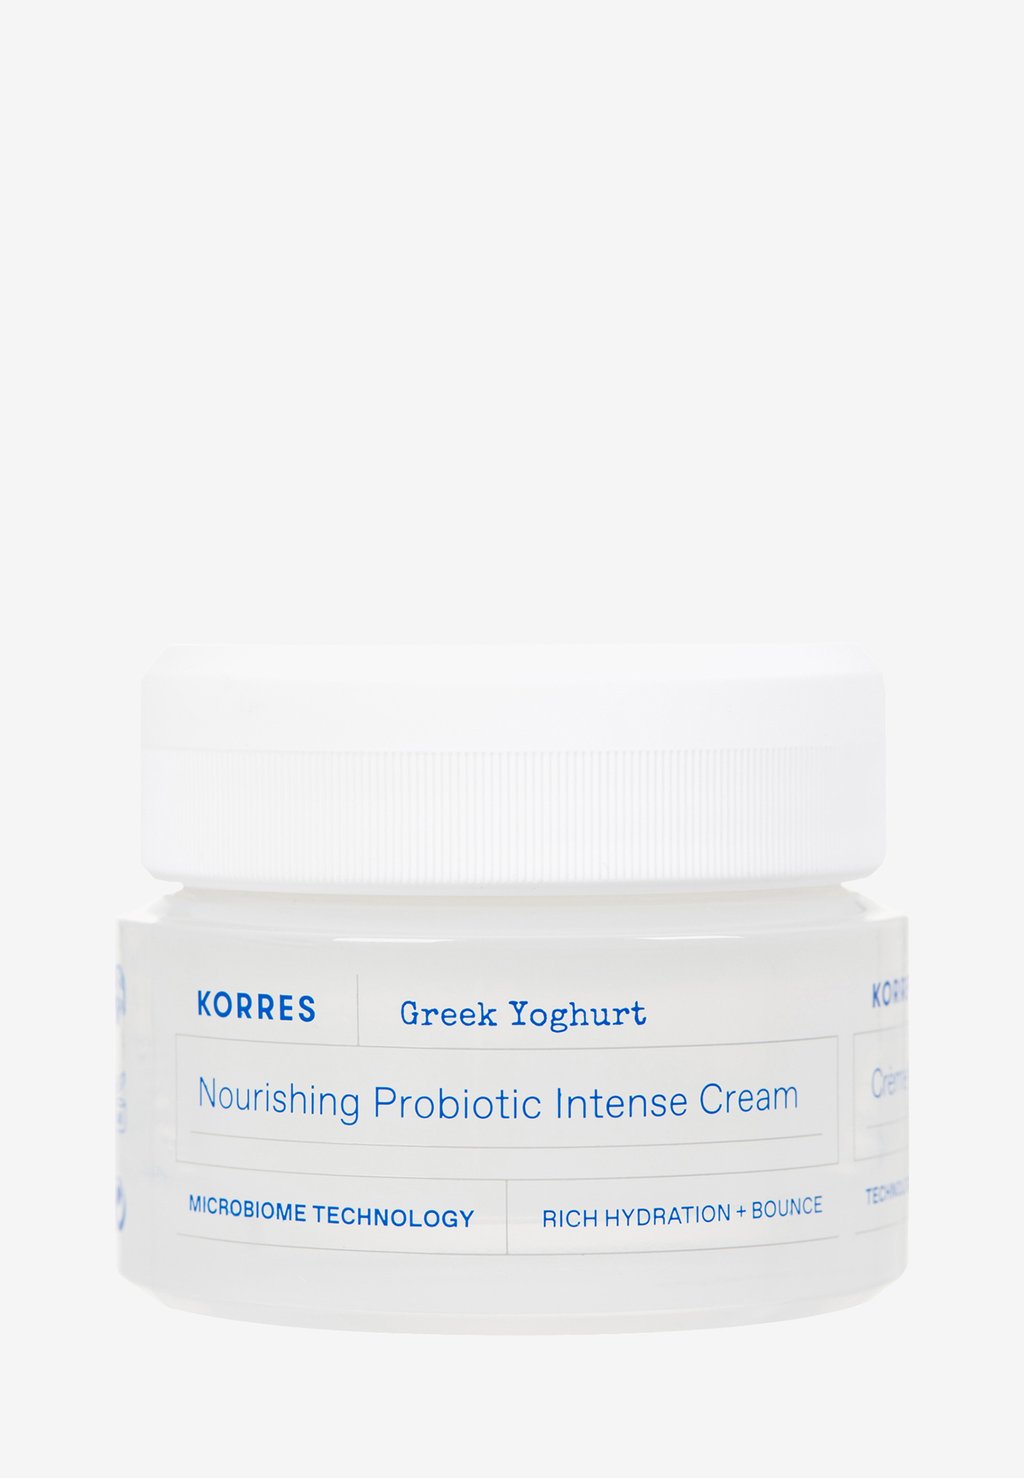 Дневной крем Greek Yoghurt Nourishing Probiotic Intense Cream KORRES